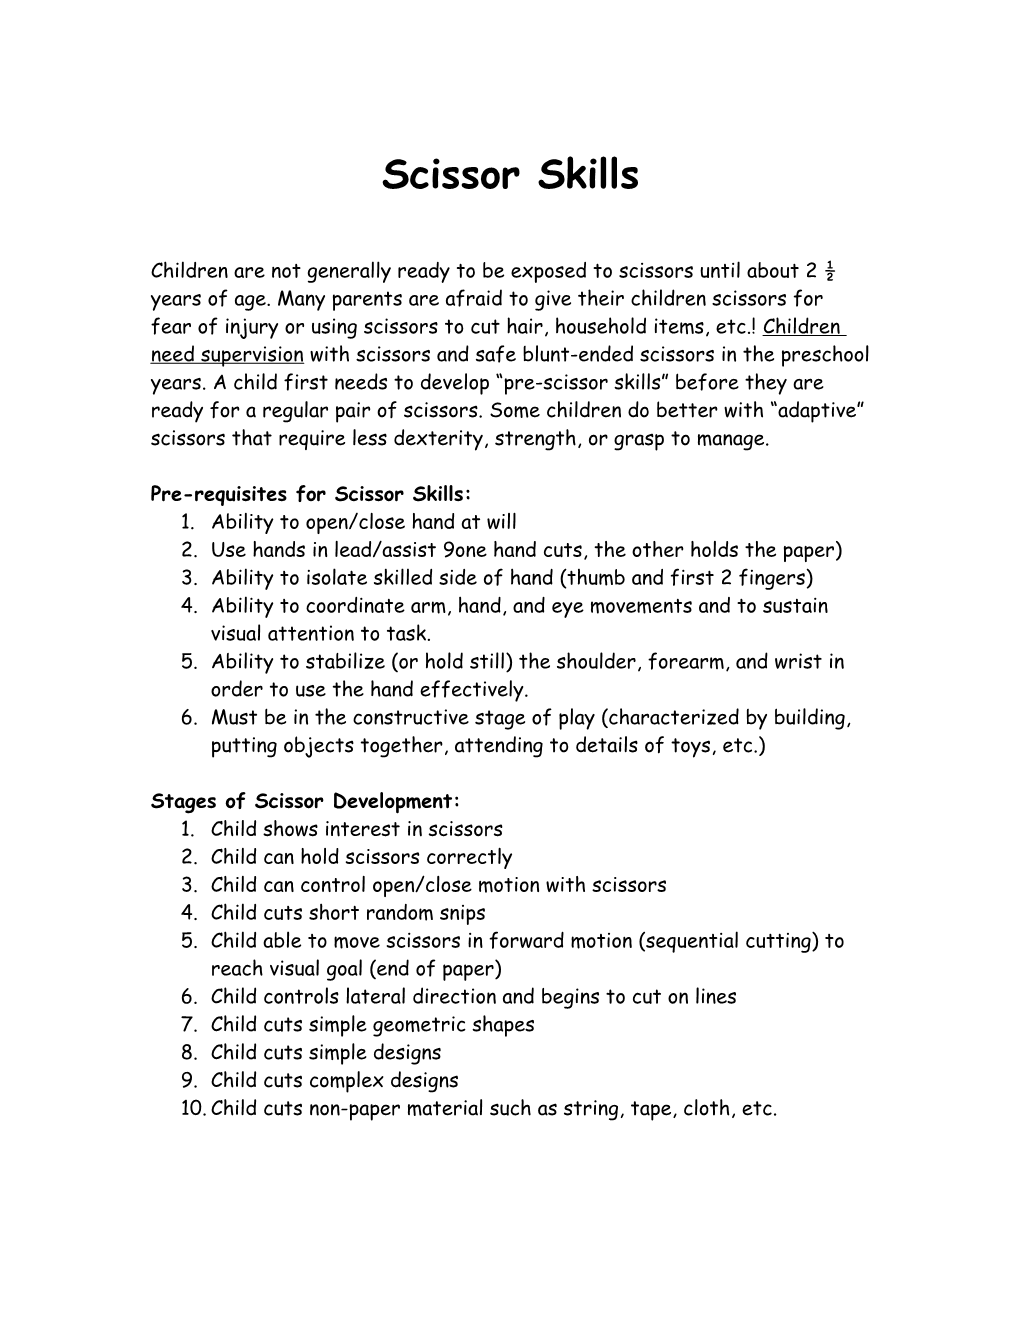 Pre-Requisites for Scissor Skills